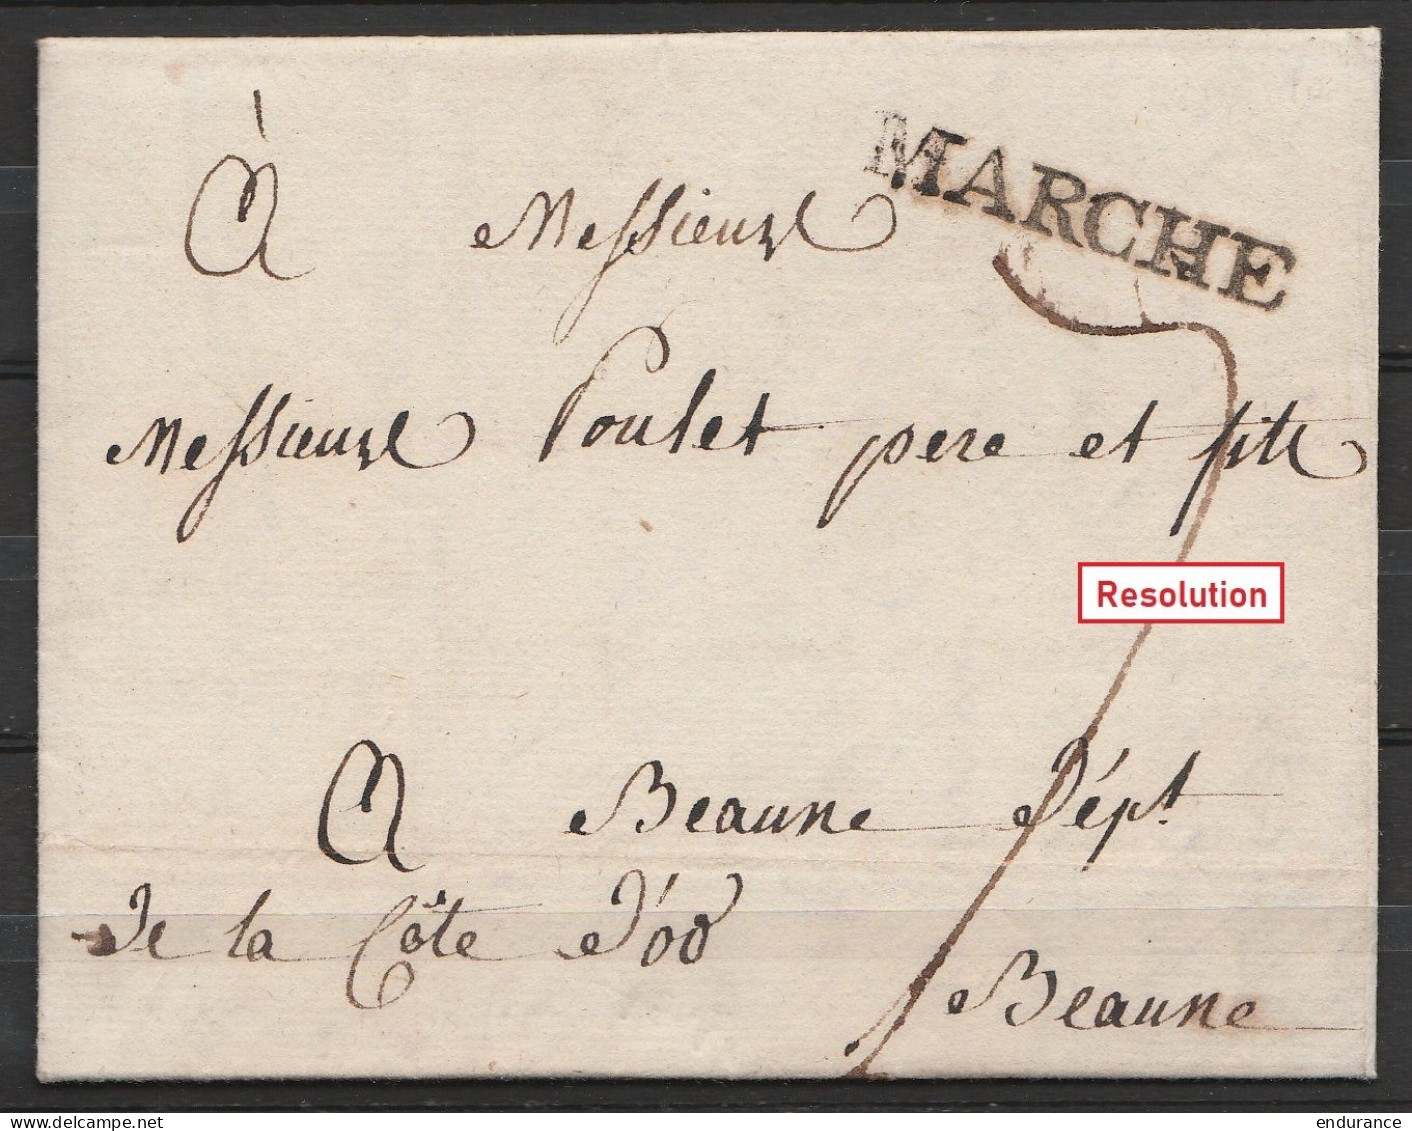 L. Datée 8 Février 1817 De HAVELANGE Pour BEAUNE Côte D'Or - Griffe "MARCHE" - Port "7" - 1815-1830 (Période Hollandaise)